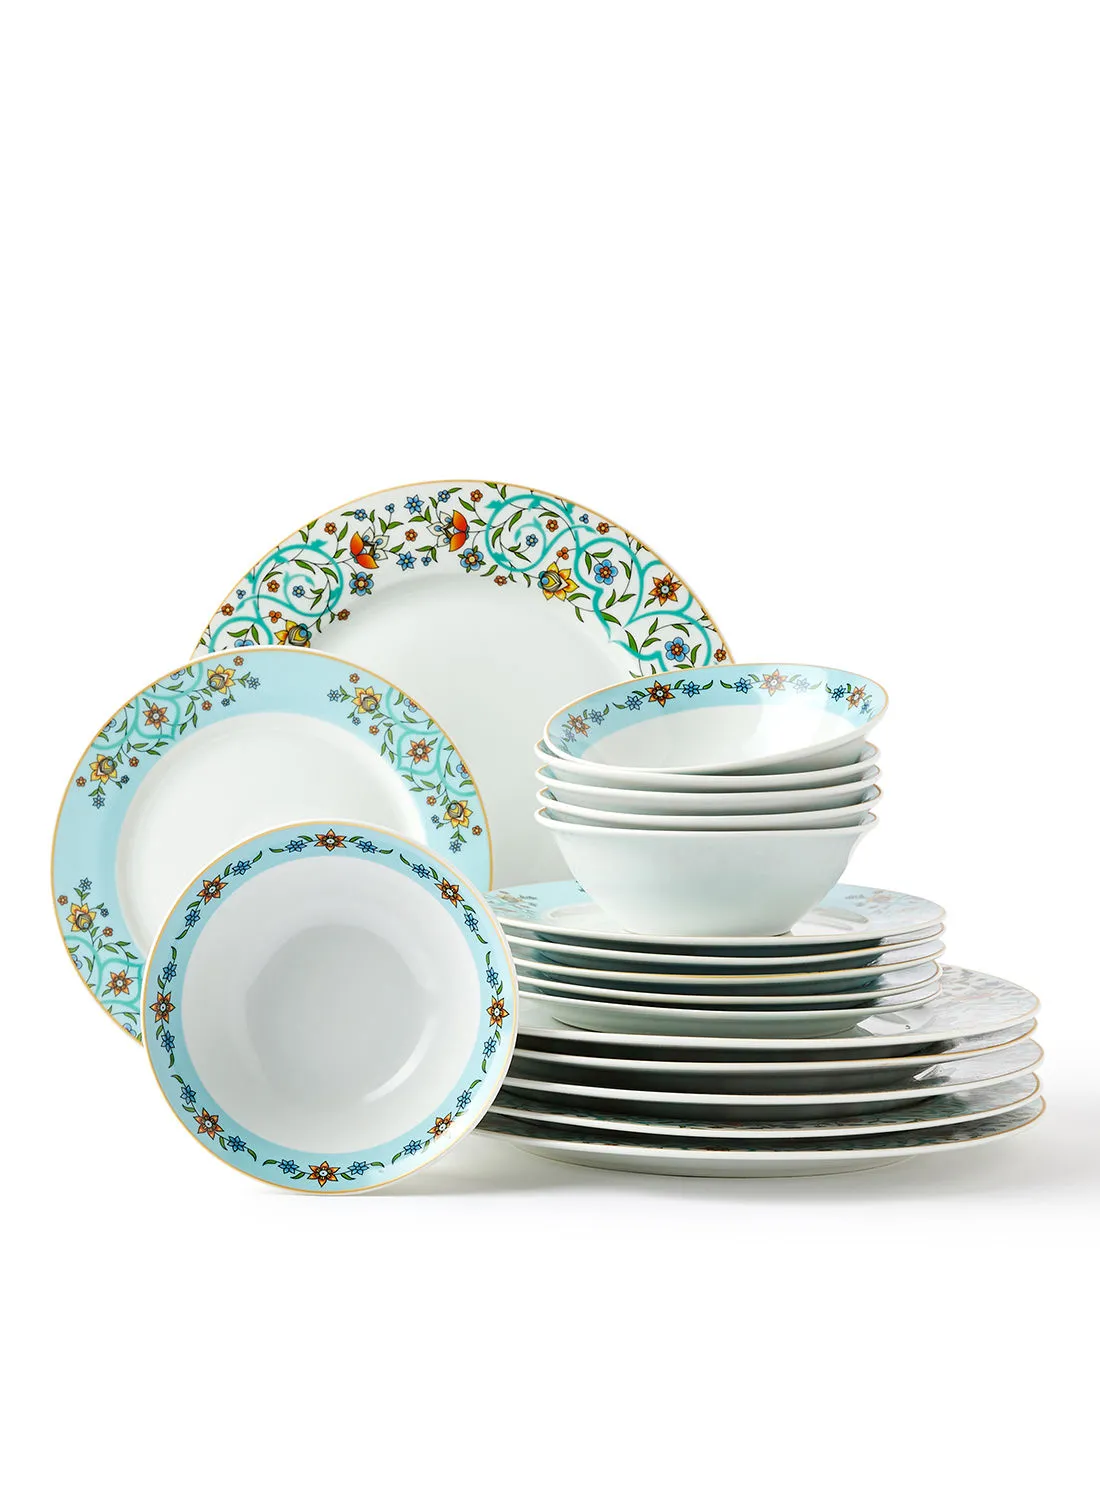 noon east 18 Piece Porcelain Dinner Set - Dishes, Plates - Dinner Plate, Side Plate, Bowl - Serves 6 - Printed Design Jade